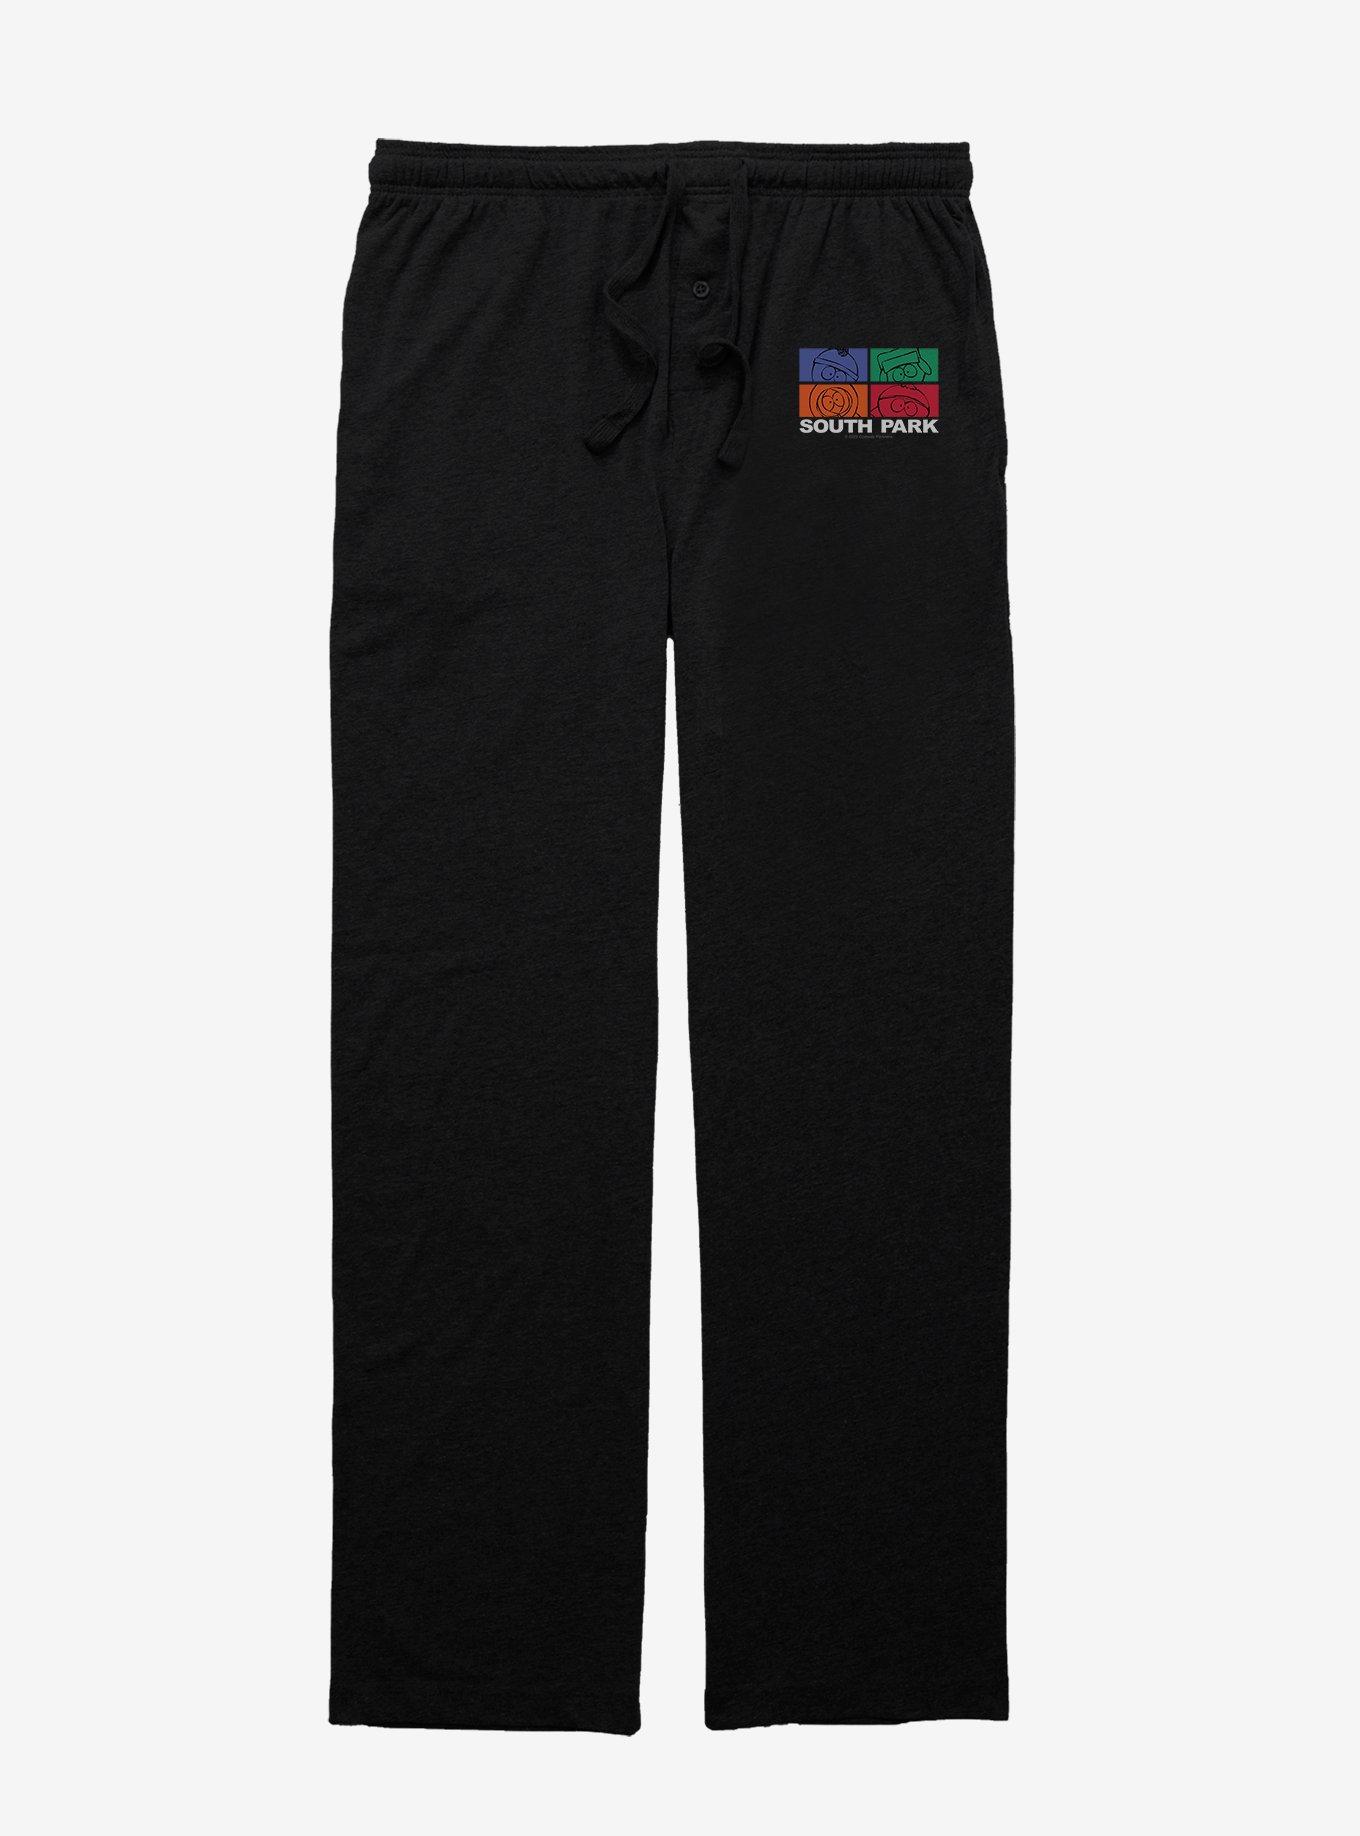 South Park Mood Meter Logo Pajama Pants, BLACK, hi-res